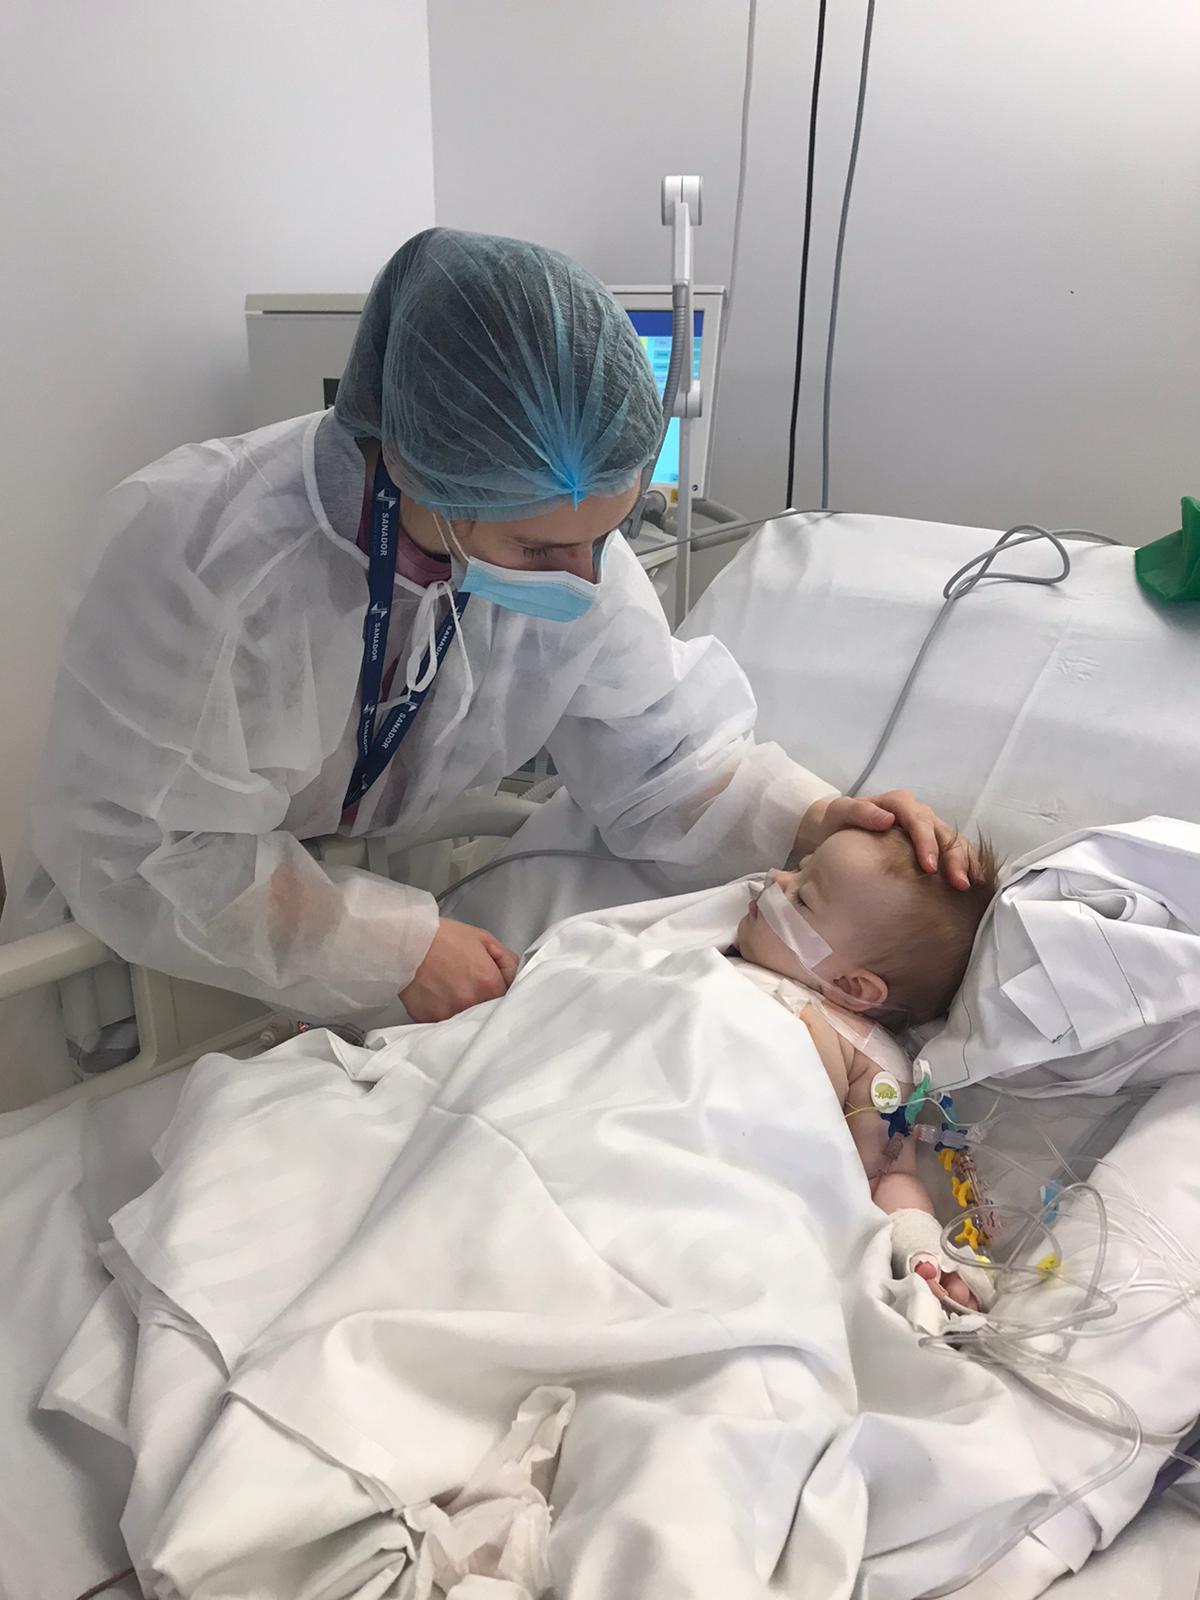 Selah s-a născut cu o malformație gravă a inimii. La un an de la operație, fetița din Arad este un copil sănătos și vesel care abia așteaptă să i se nască frățiorul